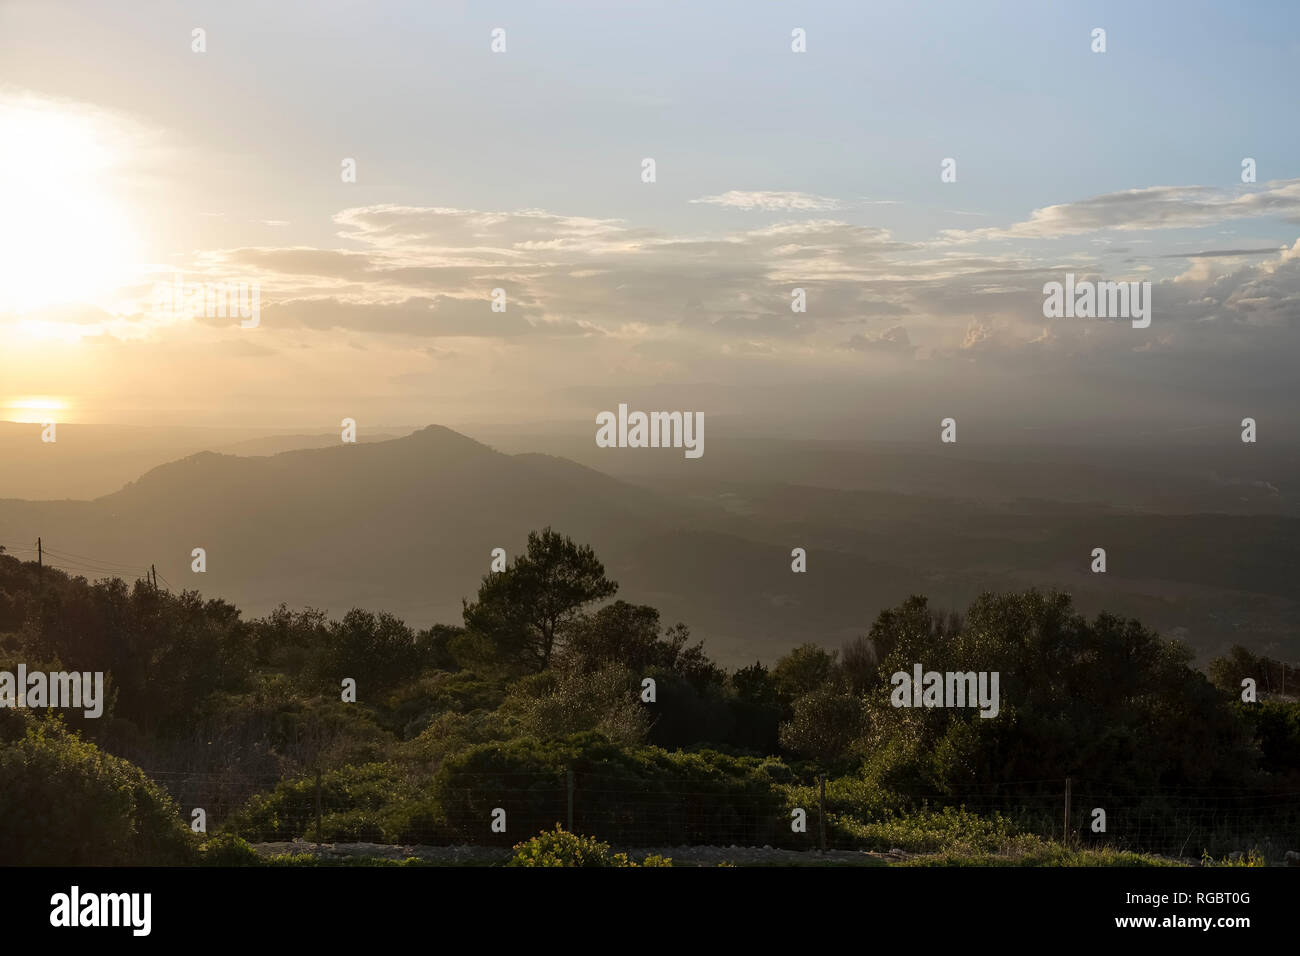 L'Espagne, Îles Baléares, Mallorca, Puig de Randa, Santuari de Cura, vue de la côte sud-ouest au coucher du soleil Banque D'Images